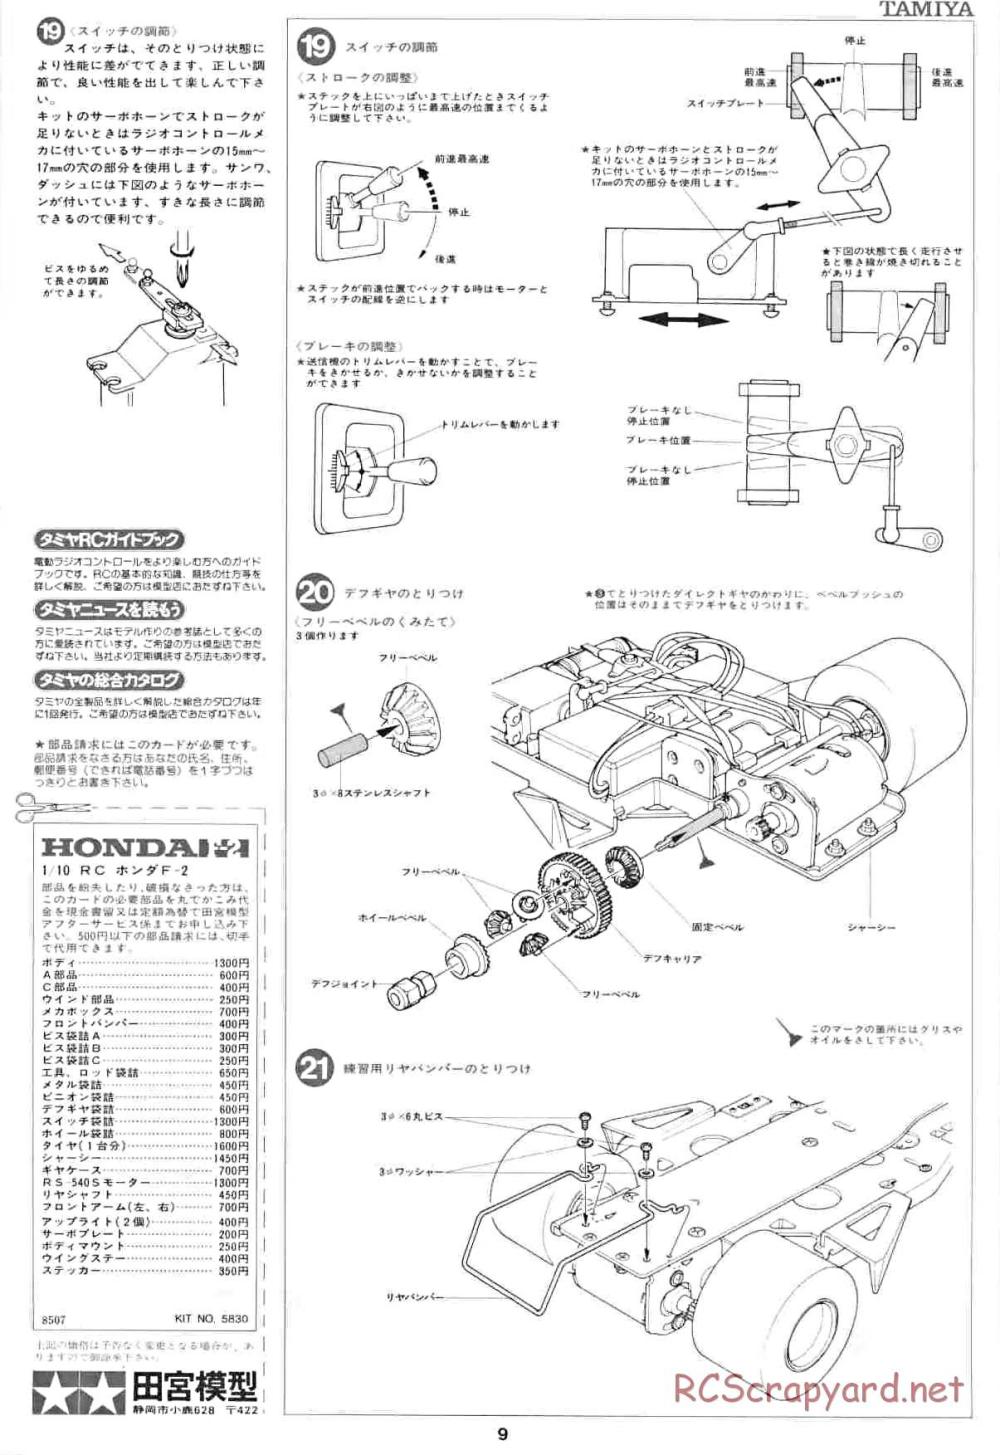 Tamiya - Honda F2 (CS) - 58030 - Manual - Page 9